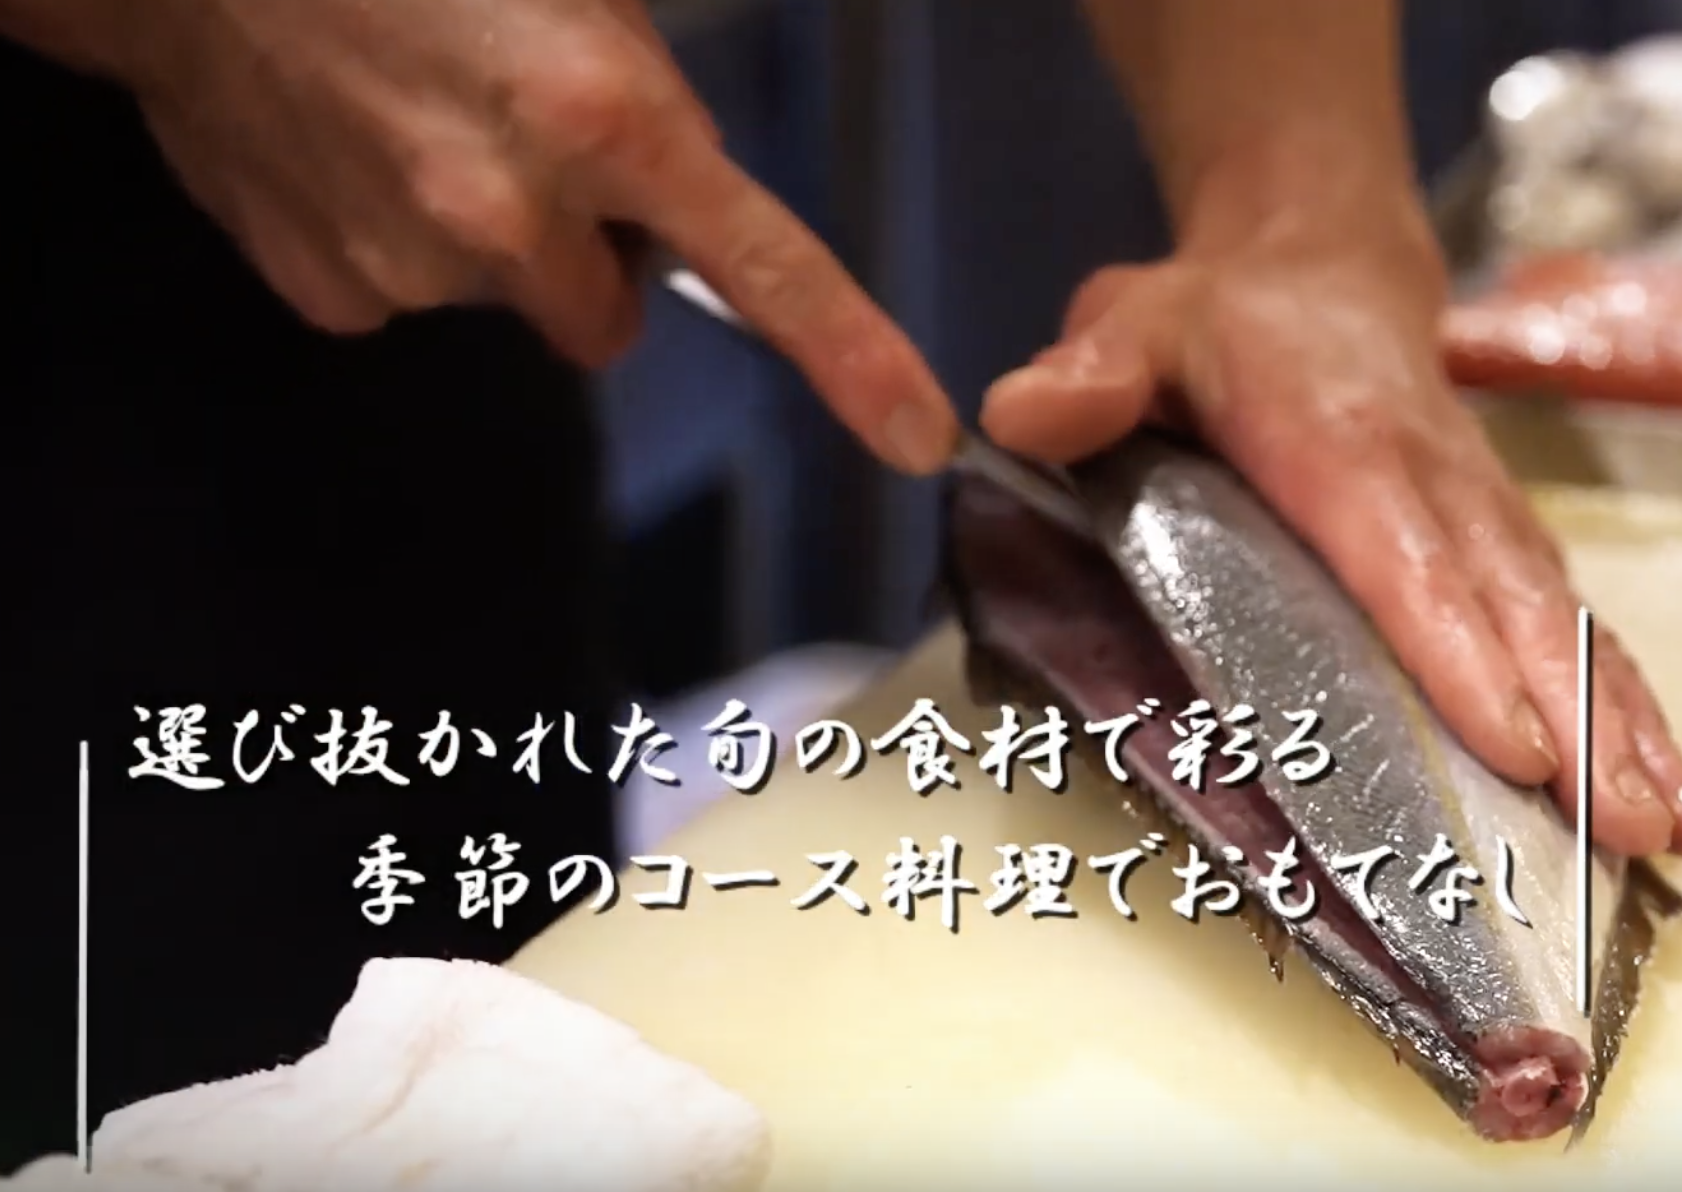 日本料理店プロモーションビデオ